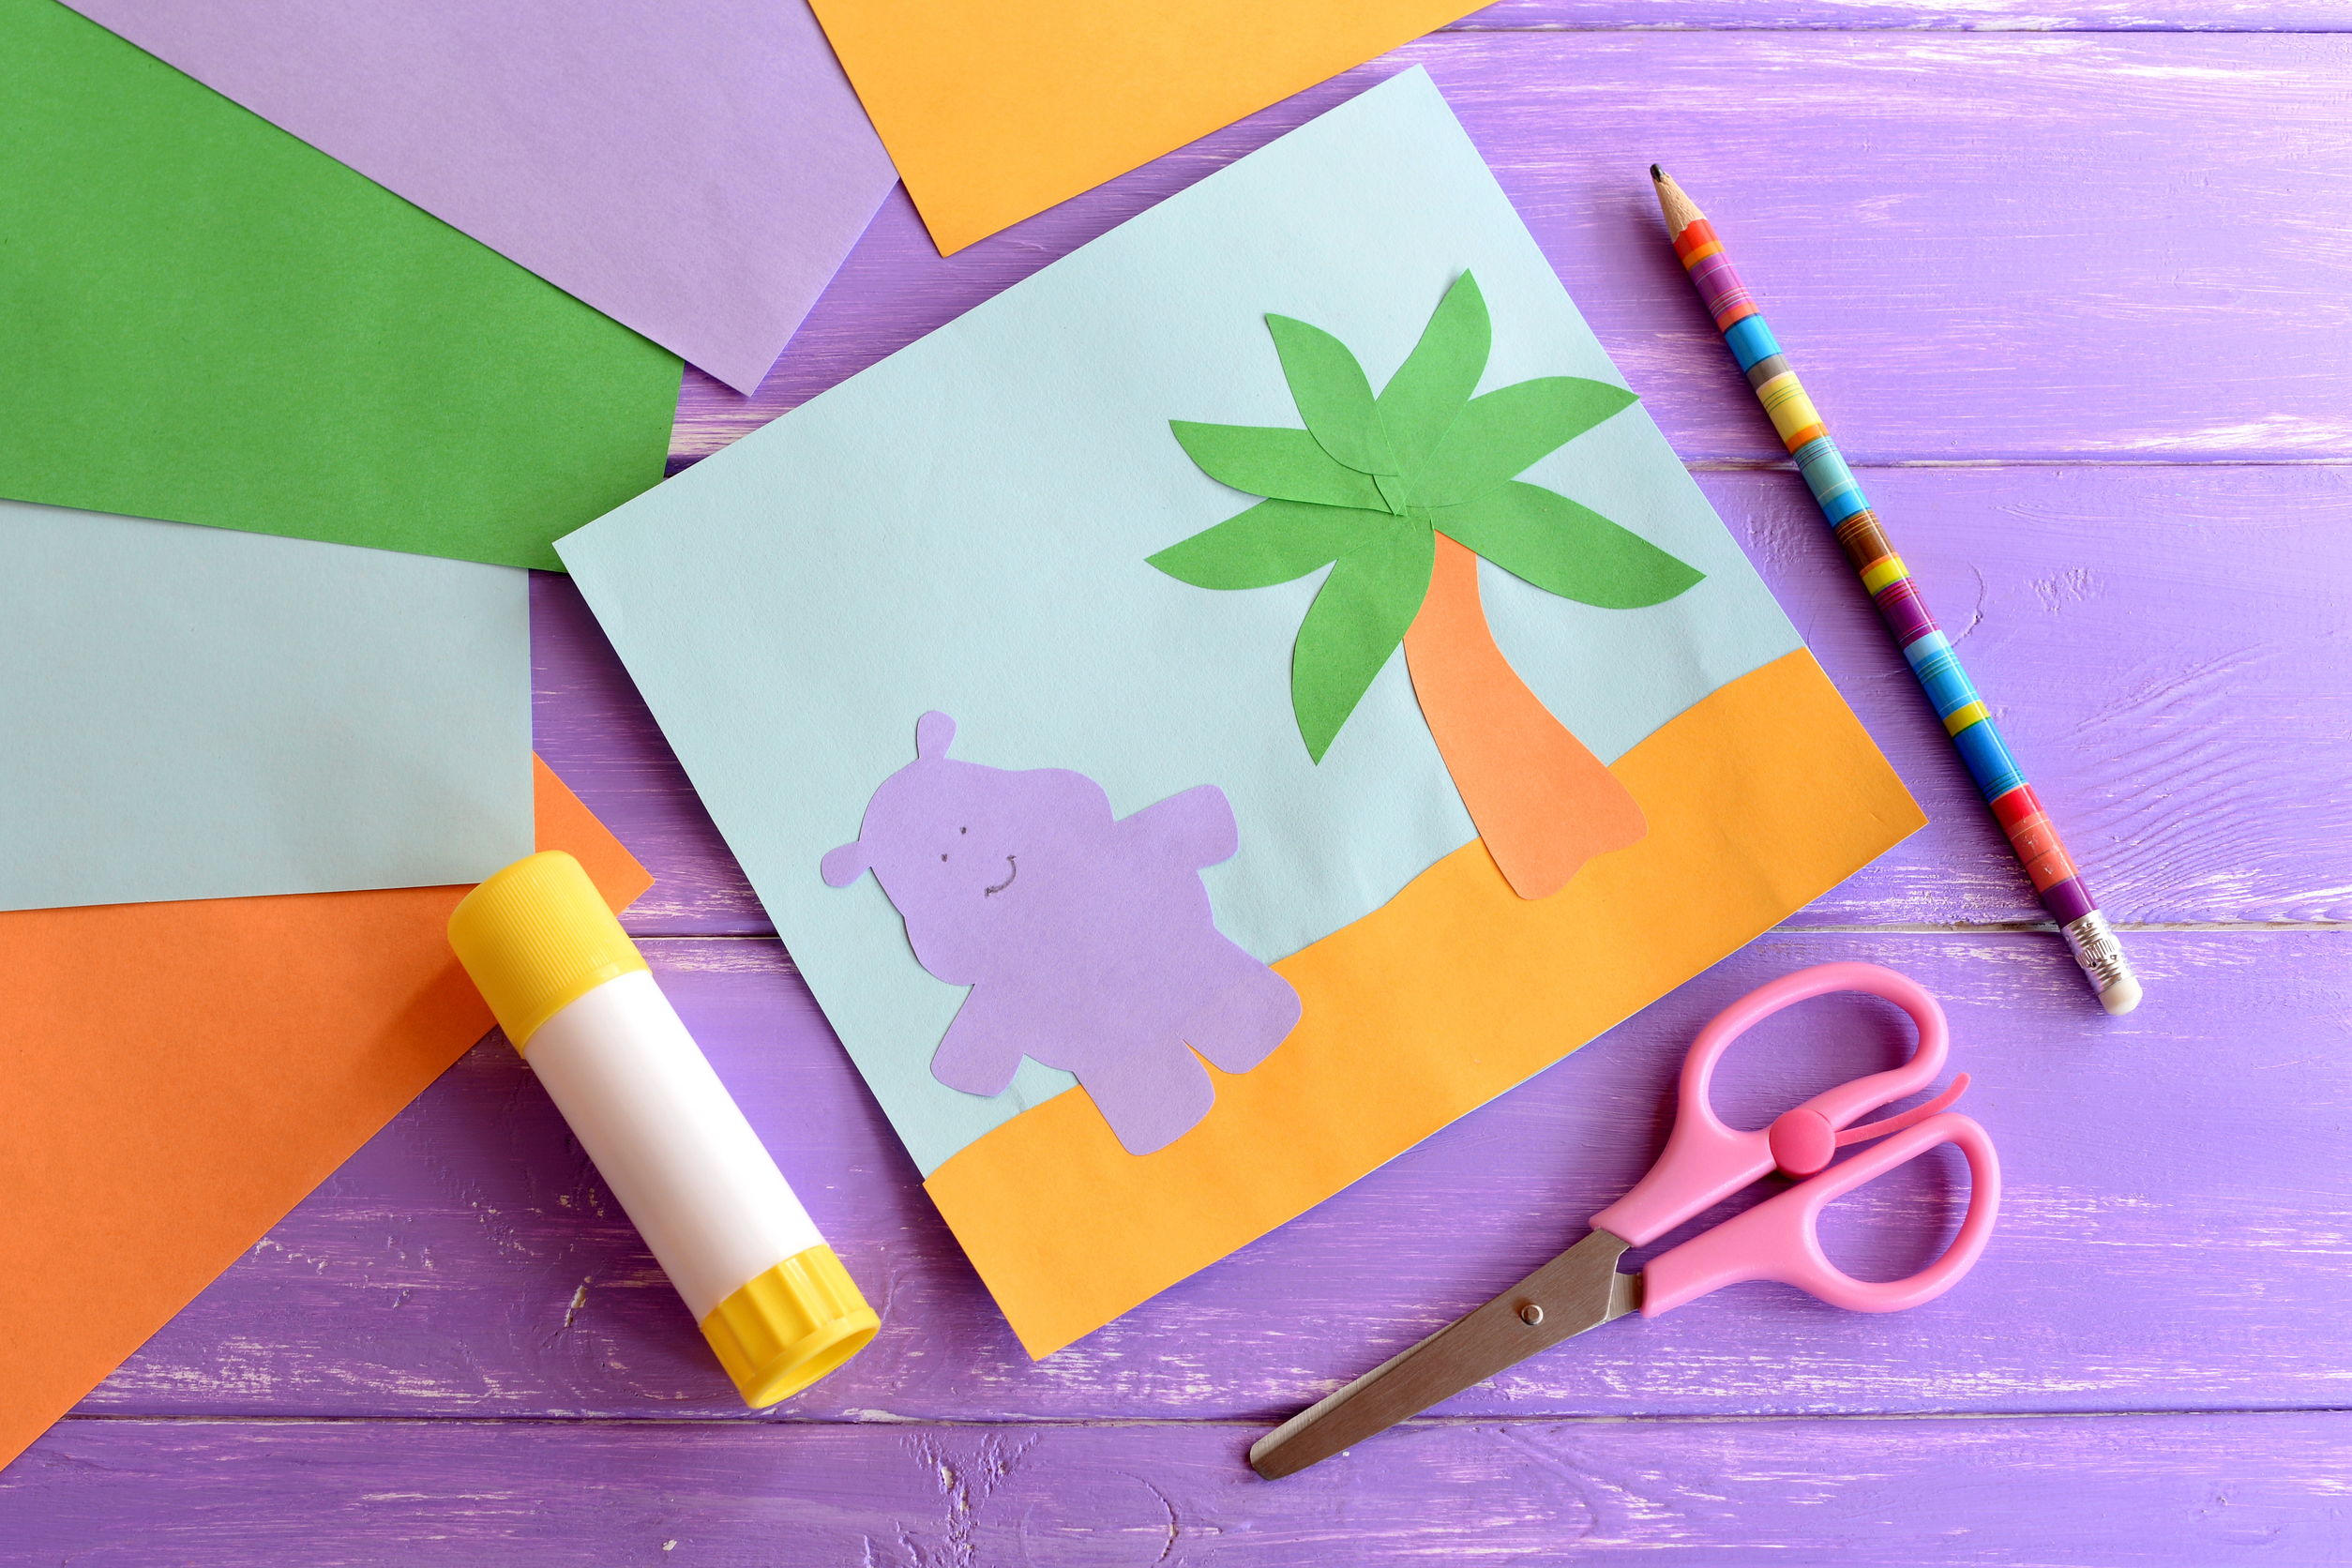 Аппликации в детский сад из цветной бумаги - инструмент развития творческих способностей малышей